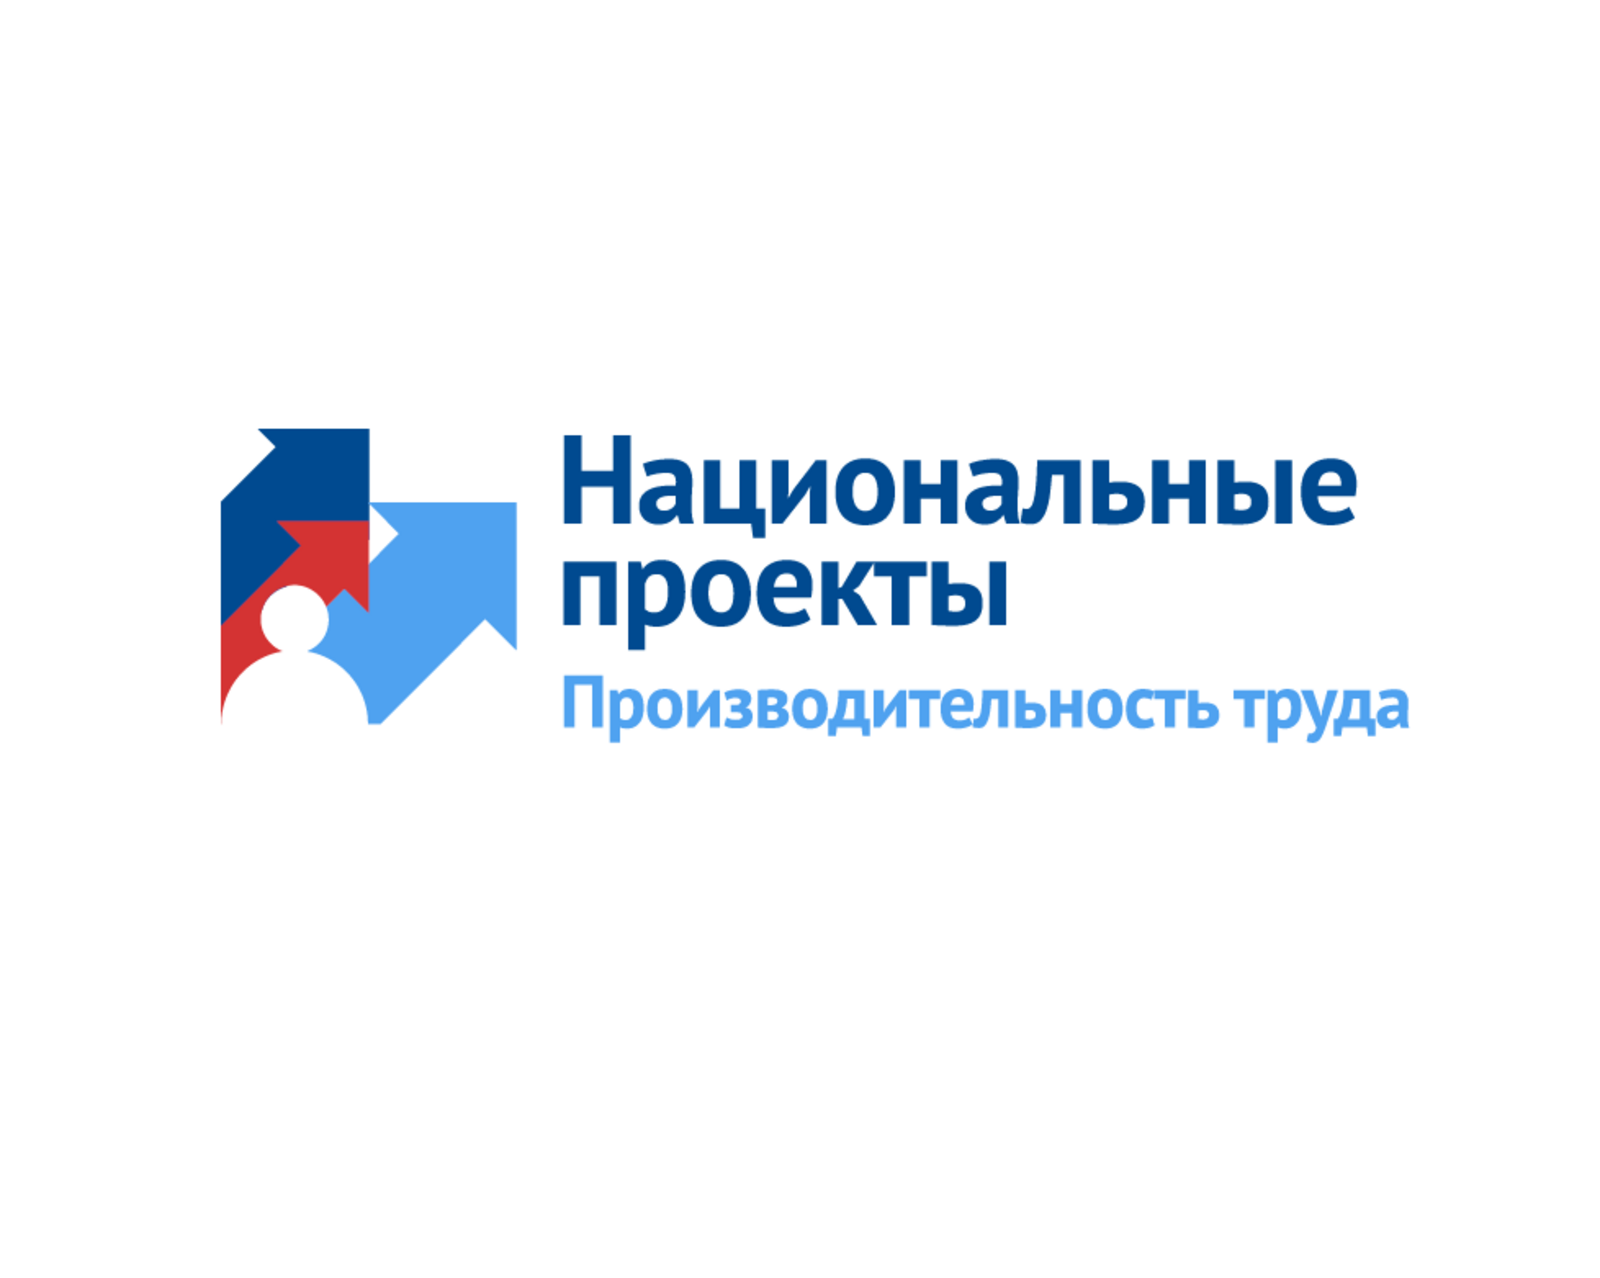 Башкирия поднялась на первое место в рейтинге субъектов России по реализации нацпроекта